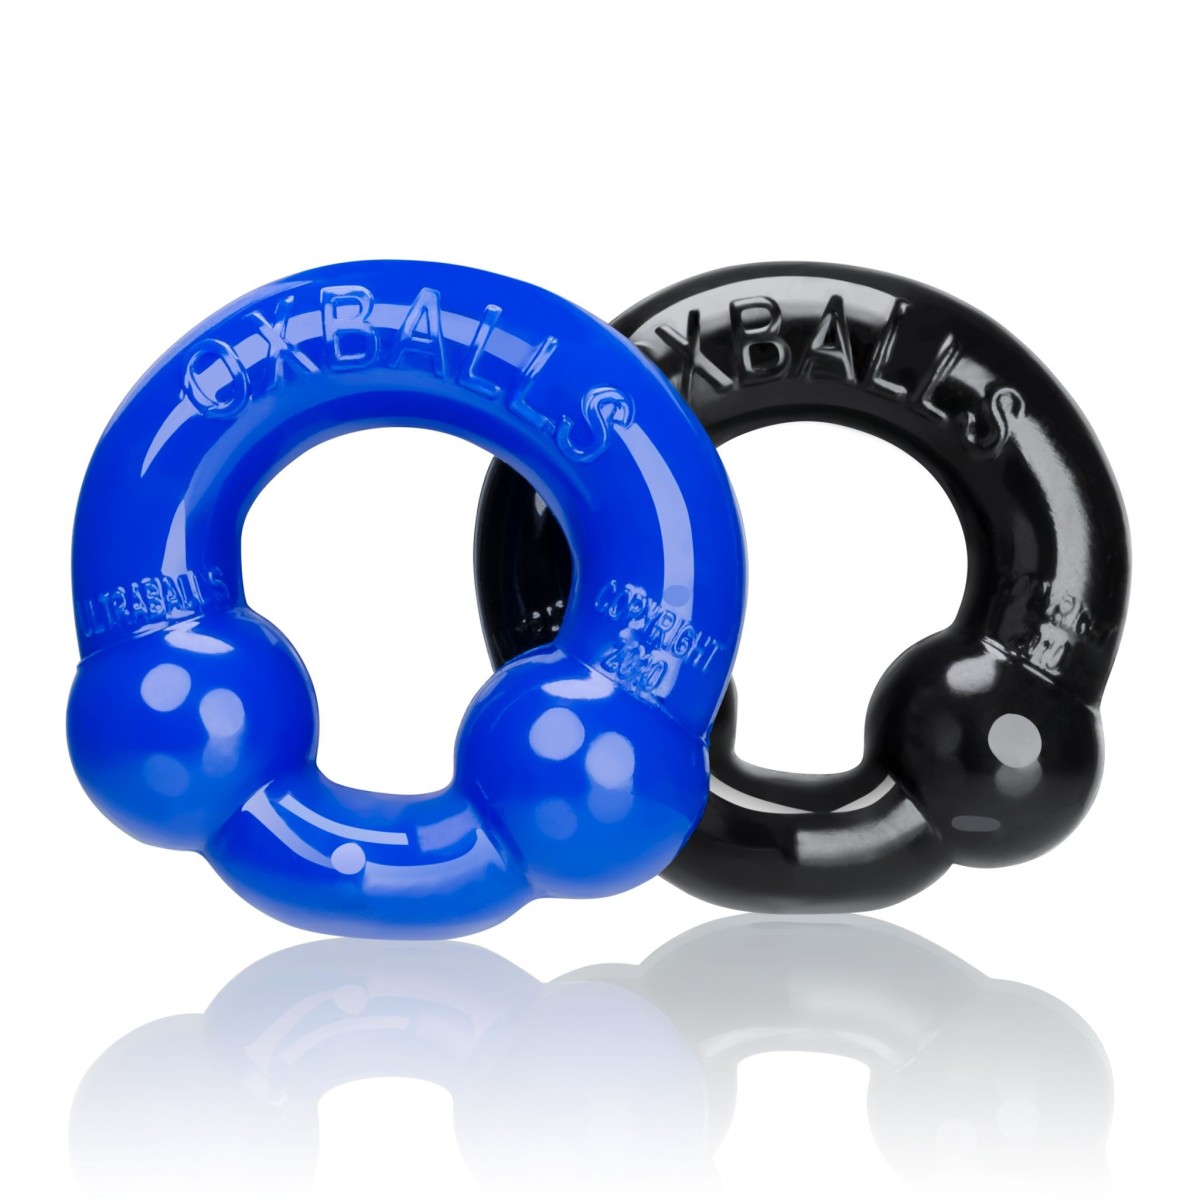 Oxballs Ultraballs 2-Pack Cockring Black & Police Blue, sada 2 ks elastických erekčních kroužků